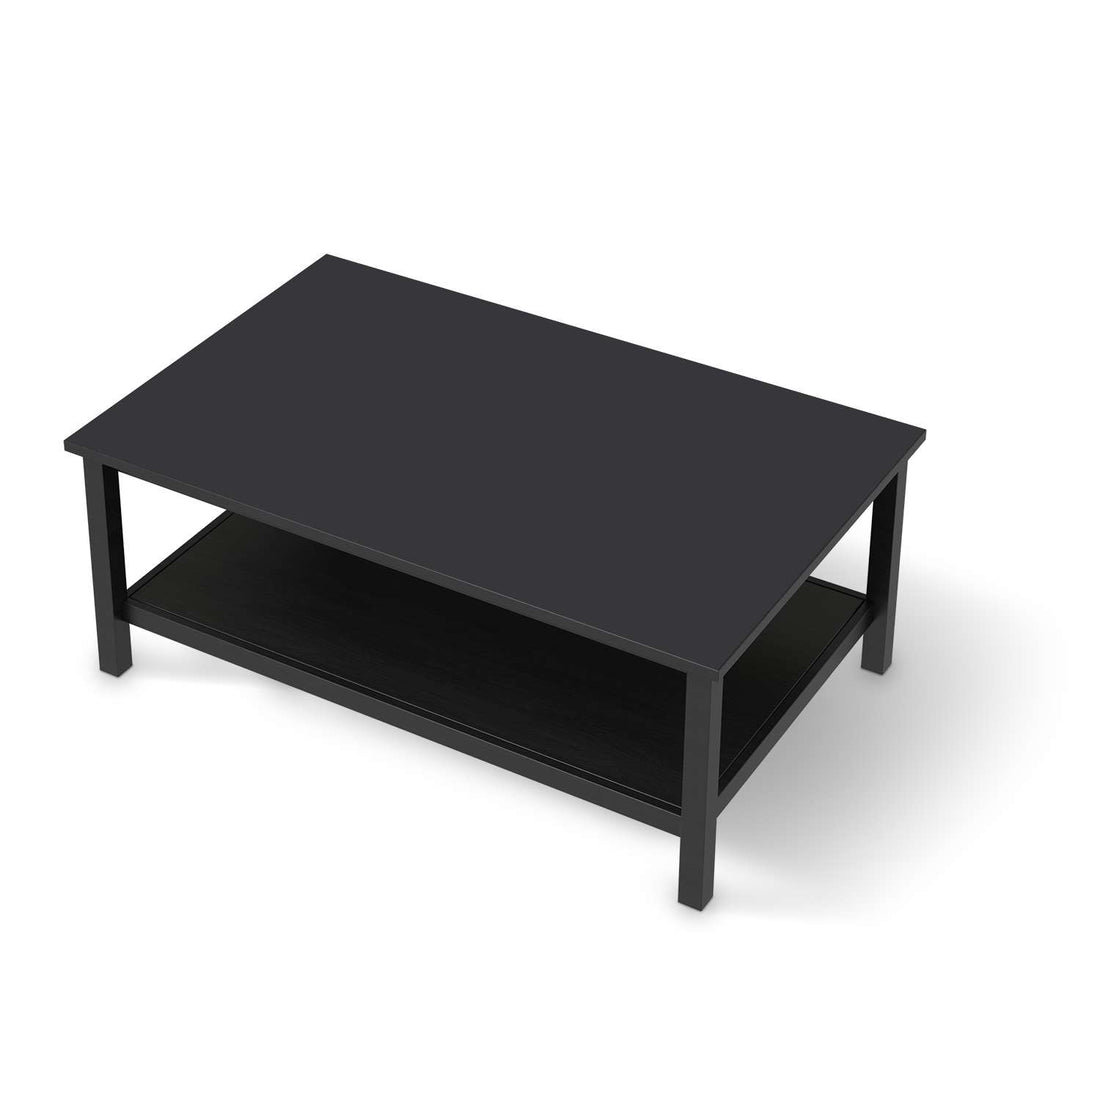 Möbelfolie Grau Dark - IKEA Hemnes Couchtisch 118x75 cm - schwarz